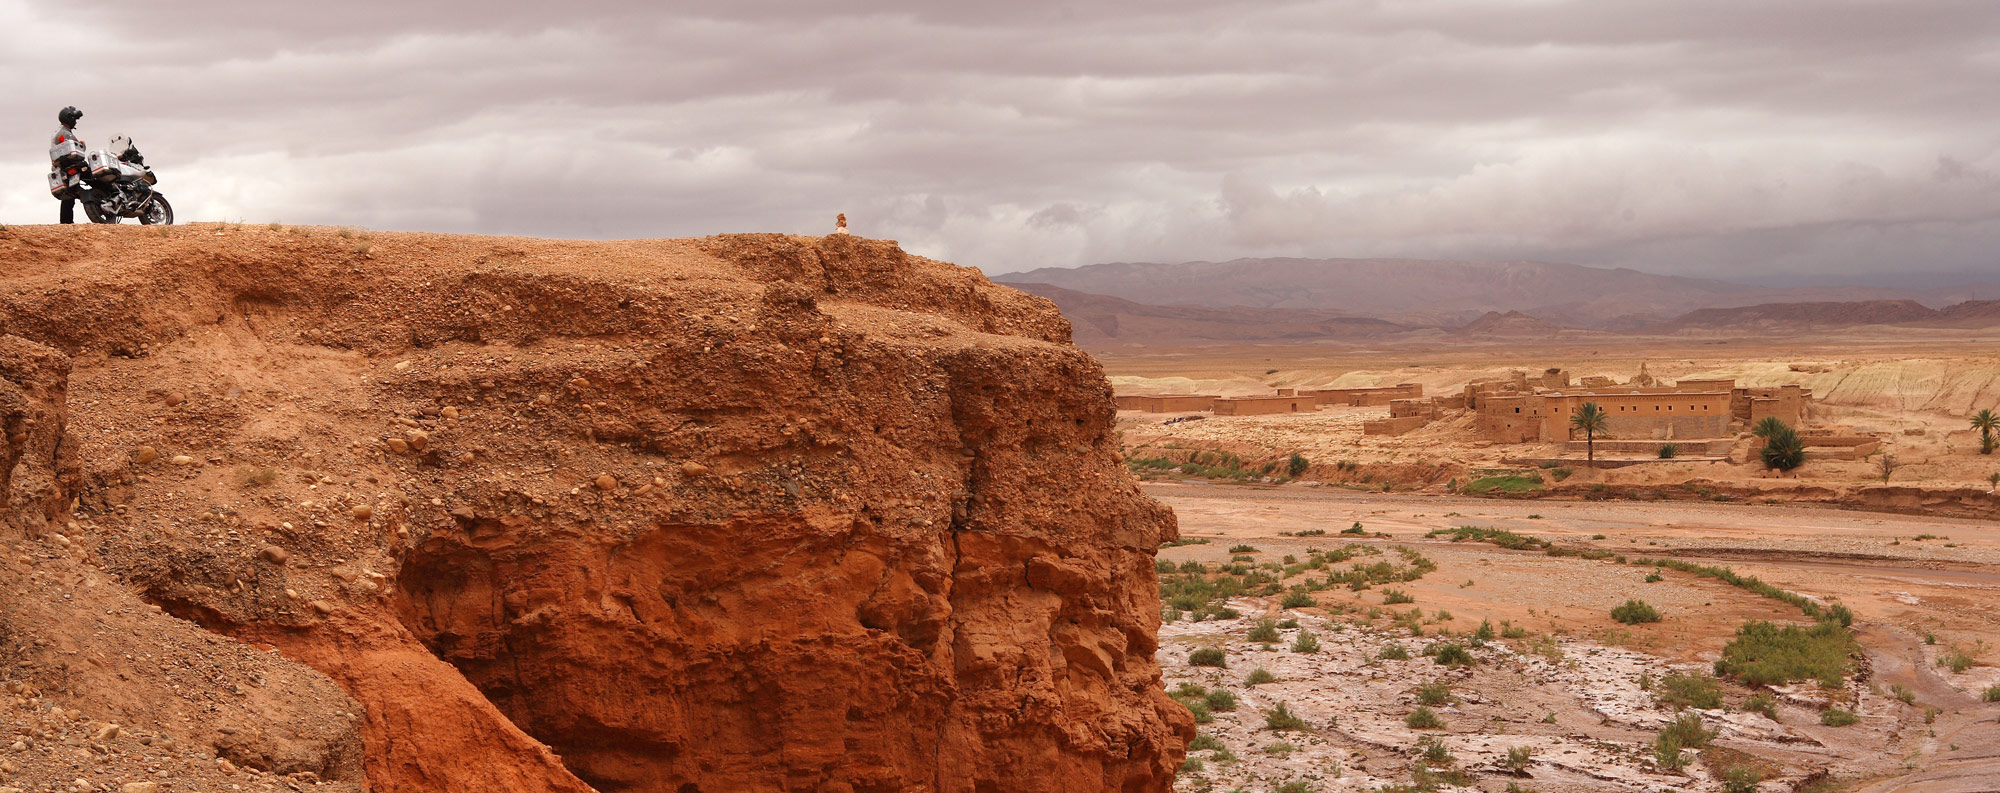 marocco, moto sul bordo del canyon